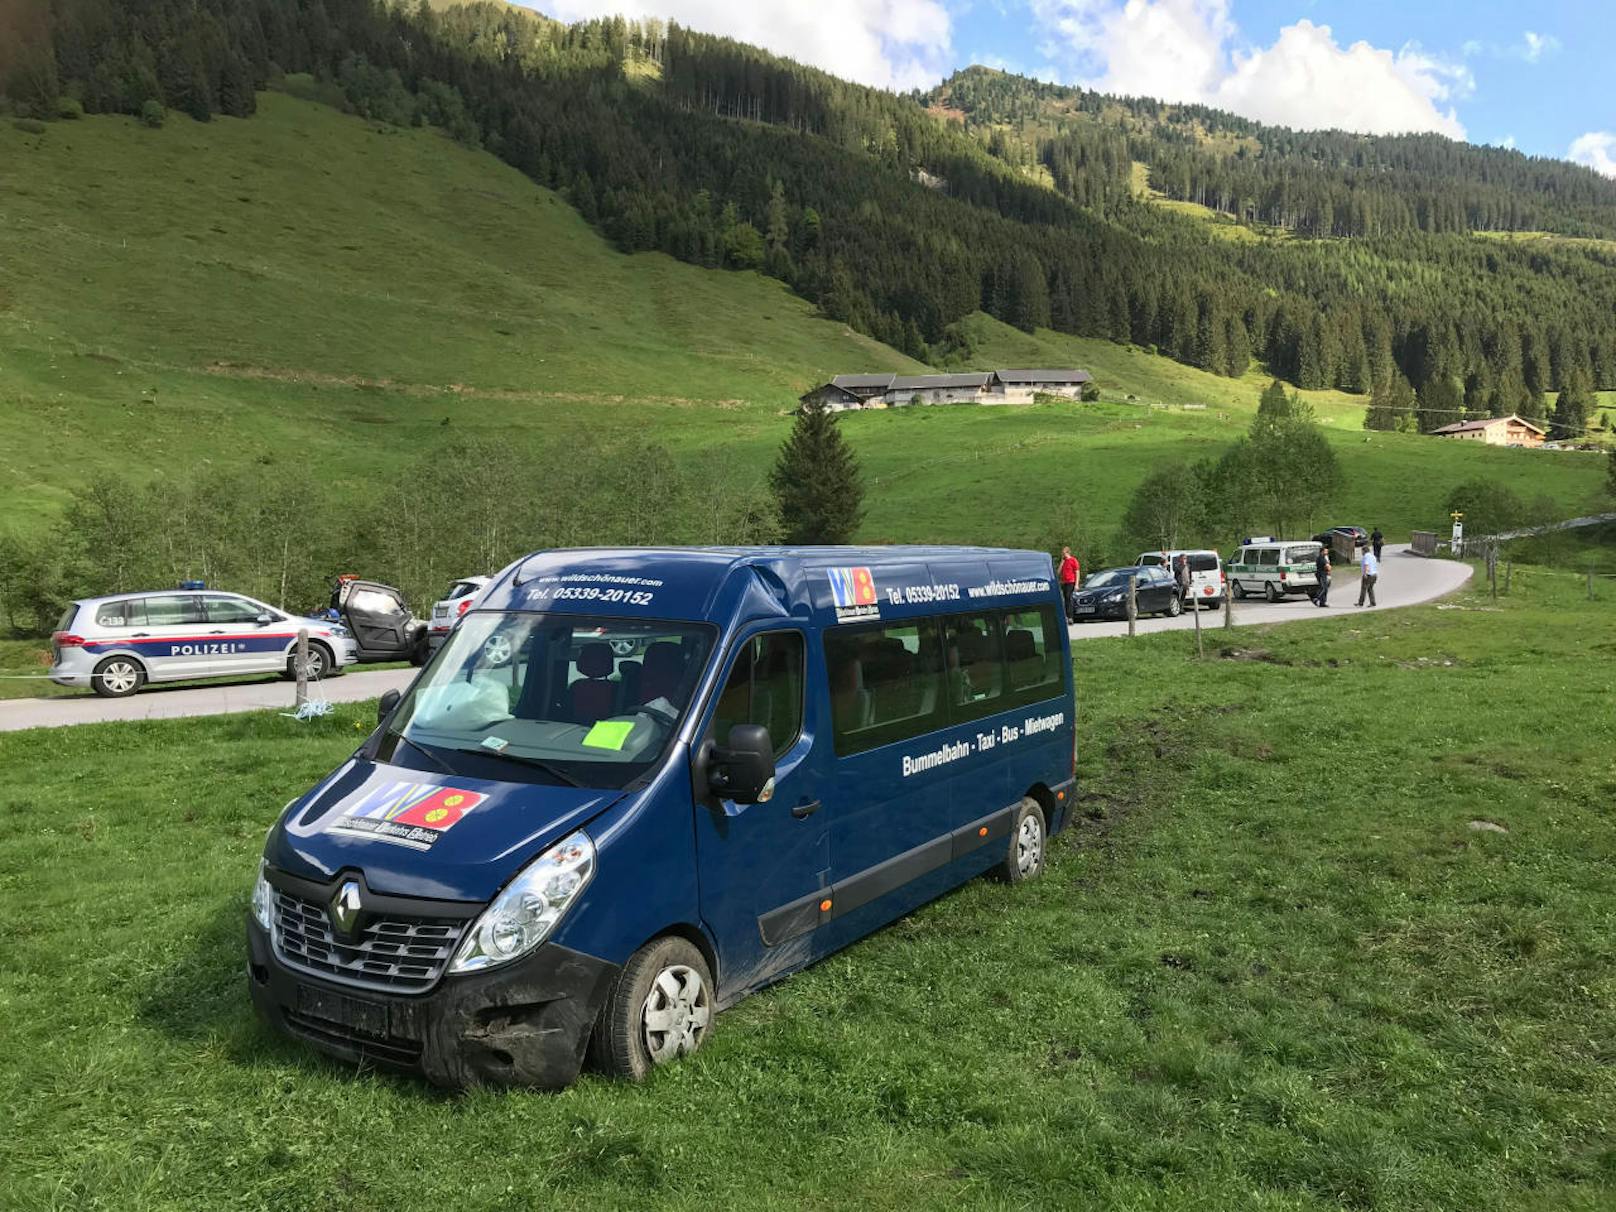 Der Verkehrsunfall ereignete sich am Samstag in Auffach im Bezirk Kufstein. Die Lenkerin eines Busses wollte gerade bremsen, doch offensichtlich versagten die Bremsen.